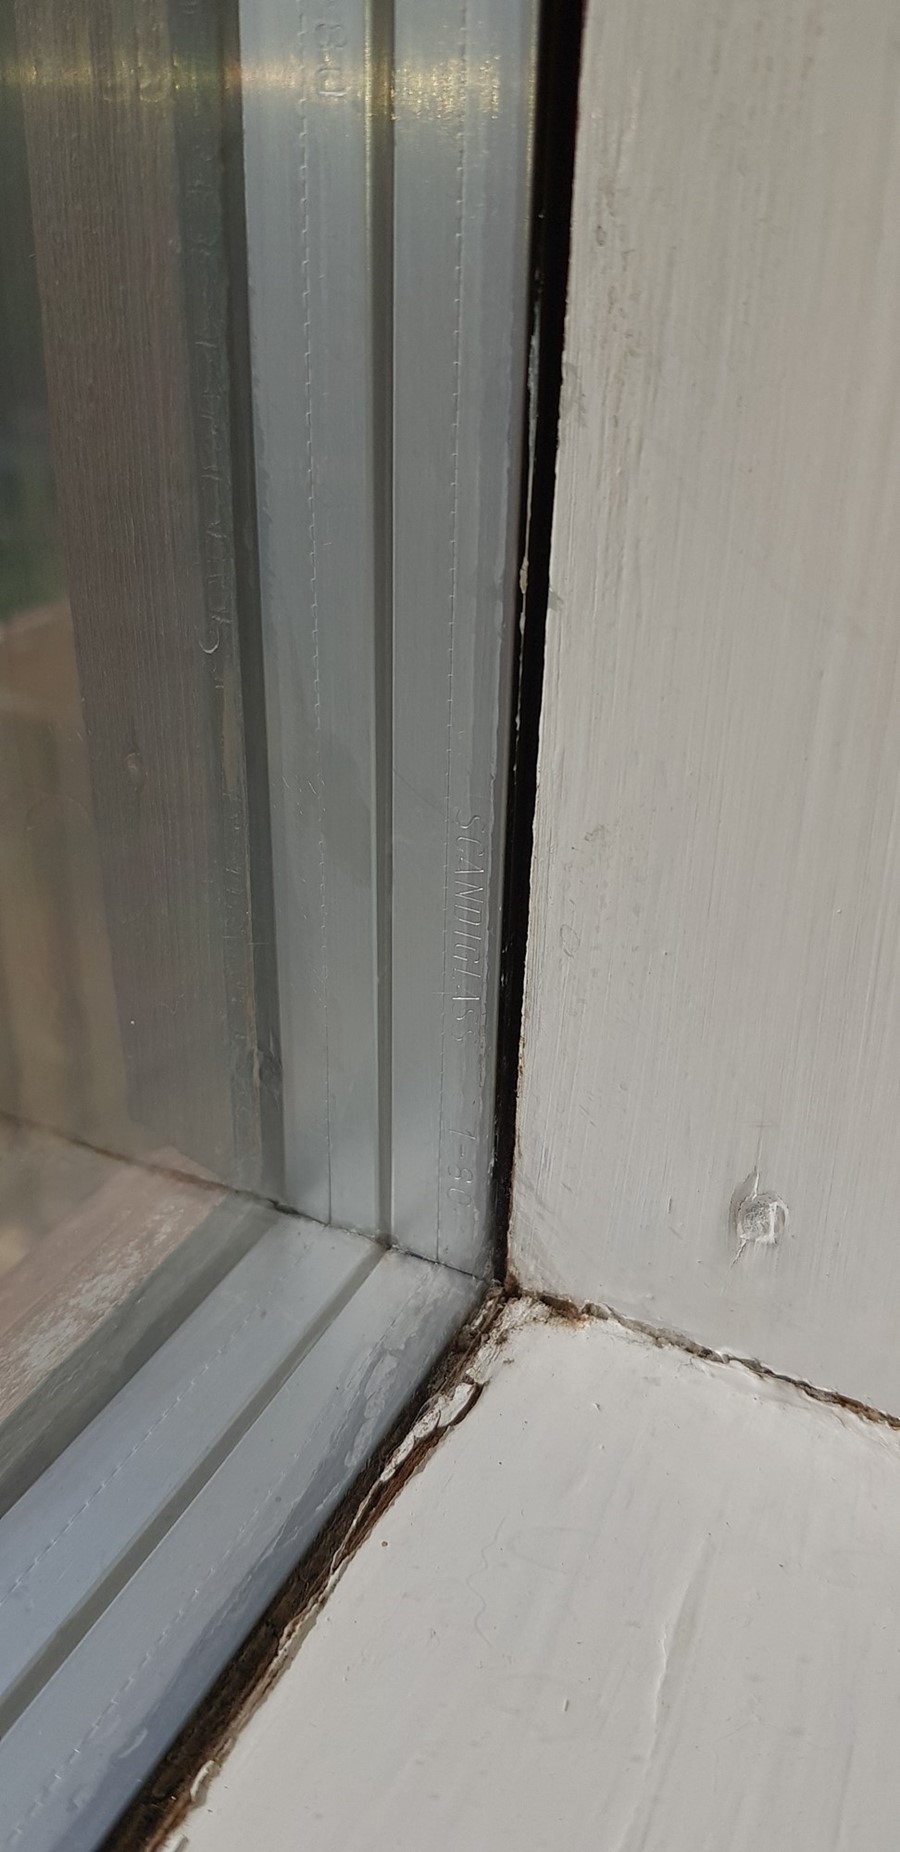 Er dette vinduskitt med asbest i? - 20190731_095029.jpg - Emmylou91